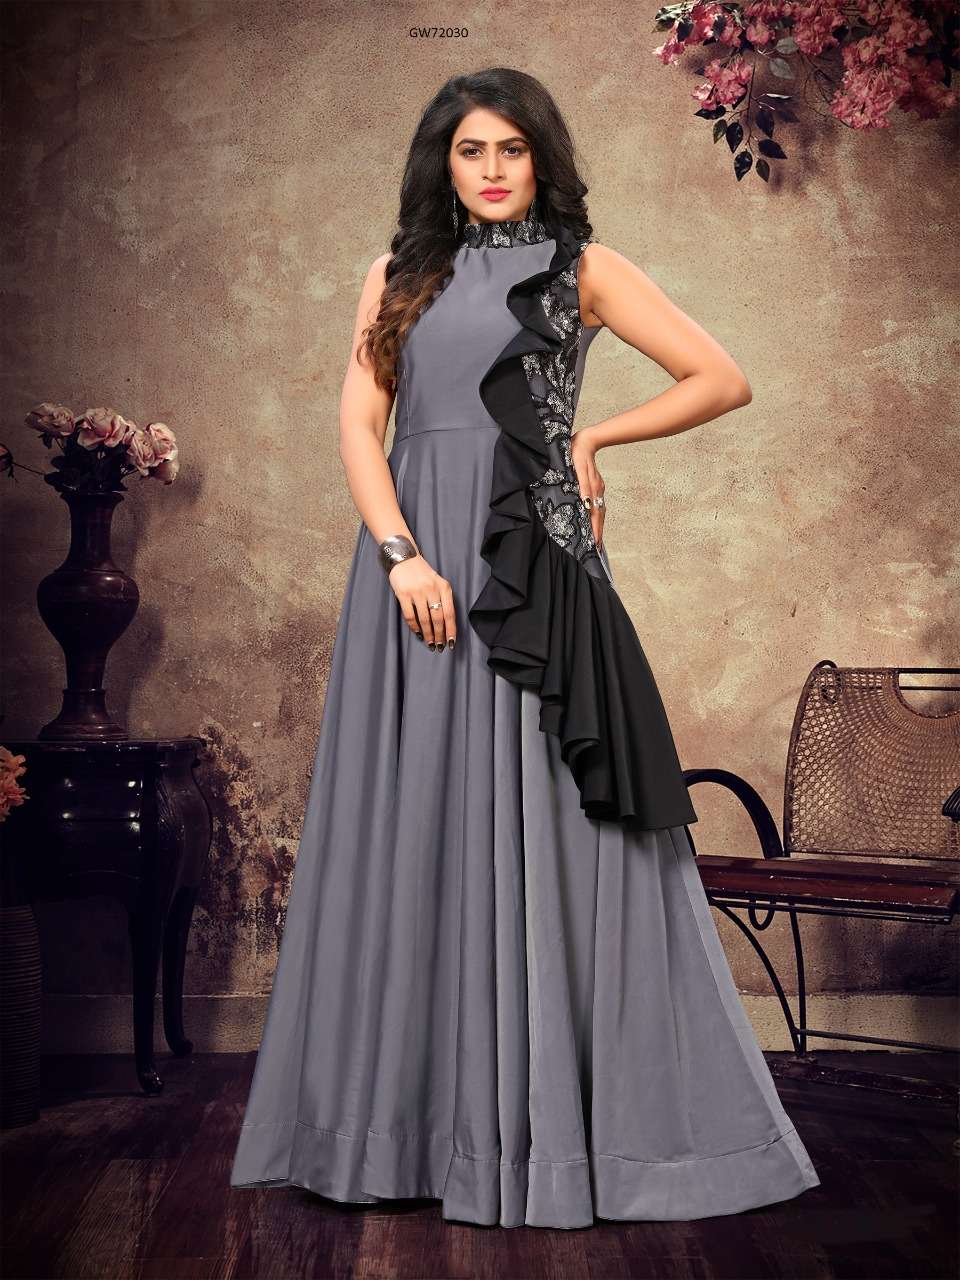 Buy Trendy Indian Wedding Dresses Online for Men & Women | Myntra